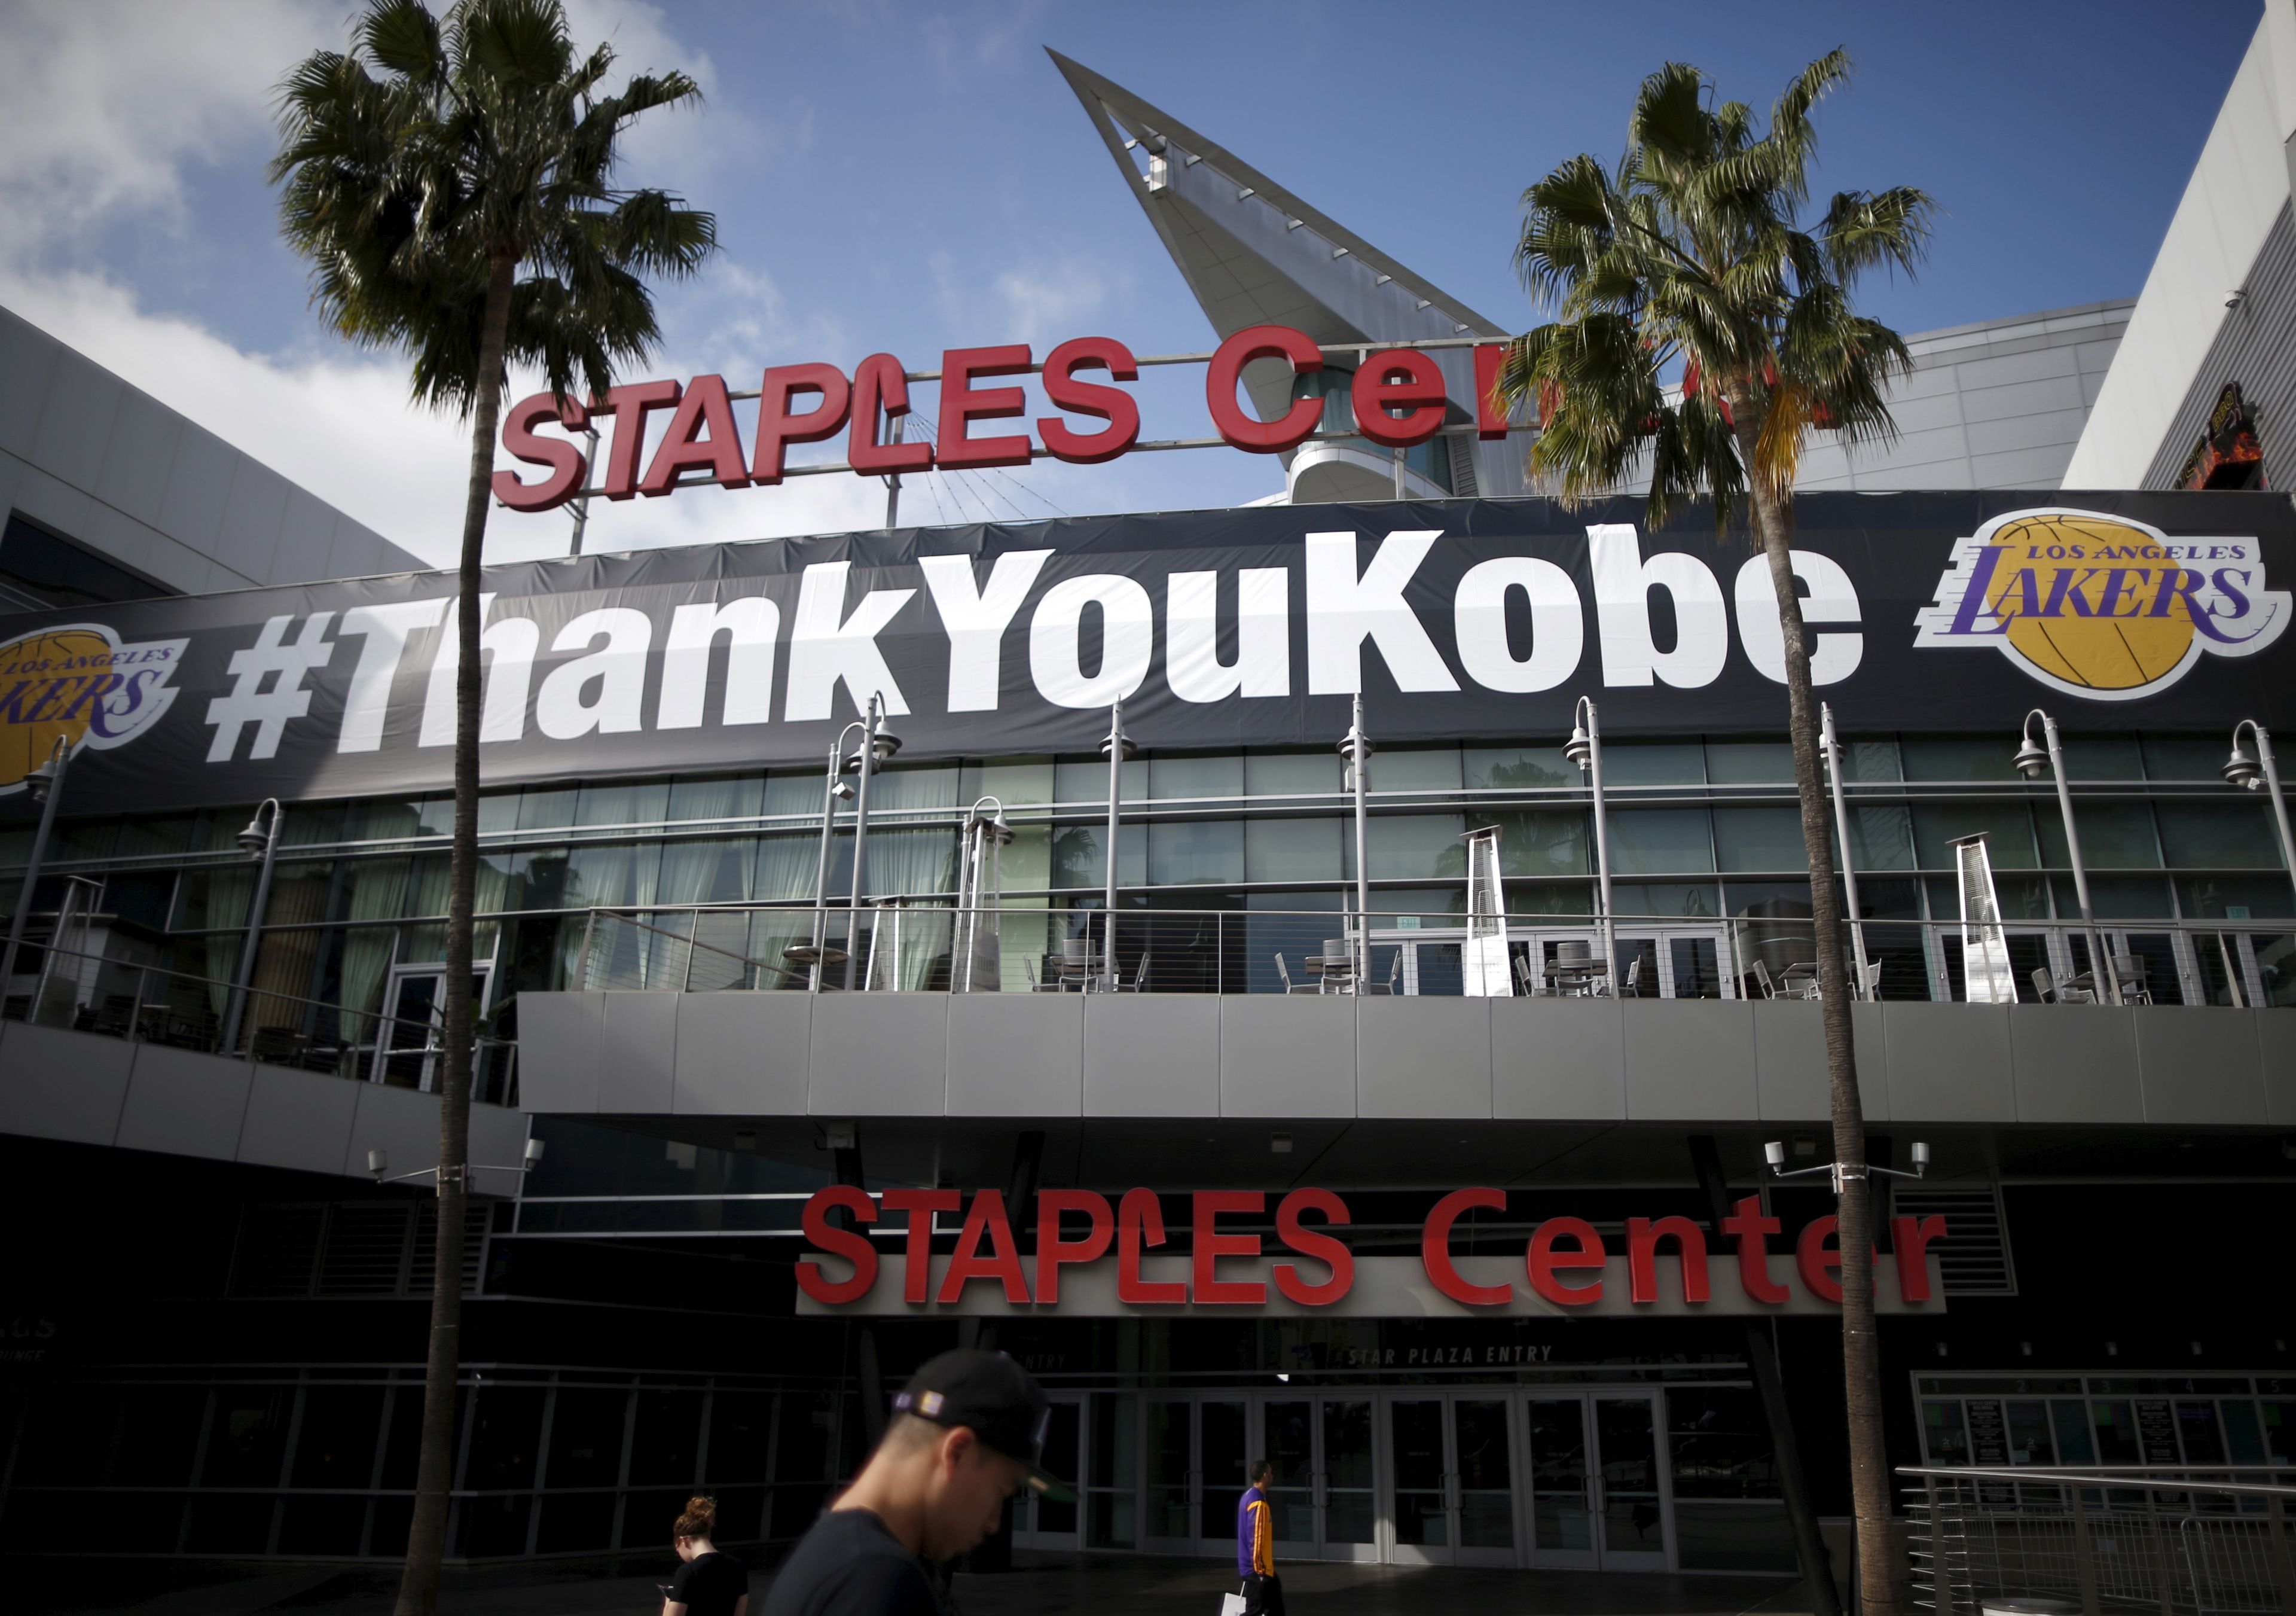 El estadio de los Lakers, Staples Center, rinde tributo a Kobe Bryant tras su retirada en 2016.